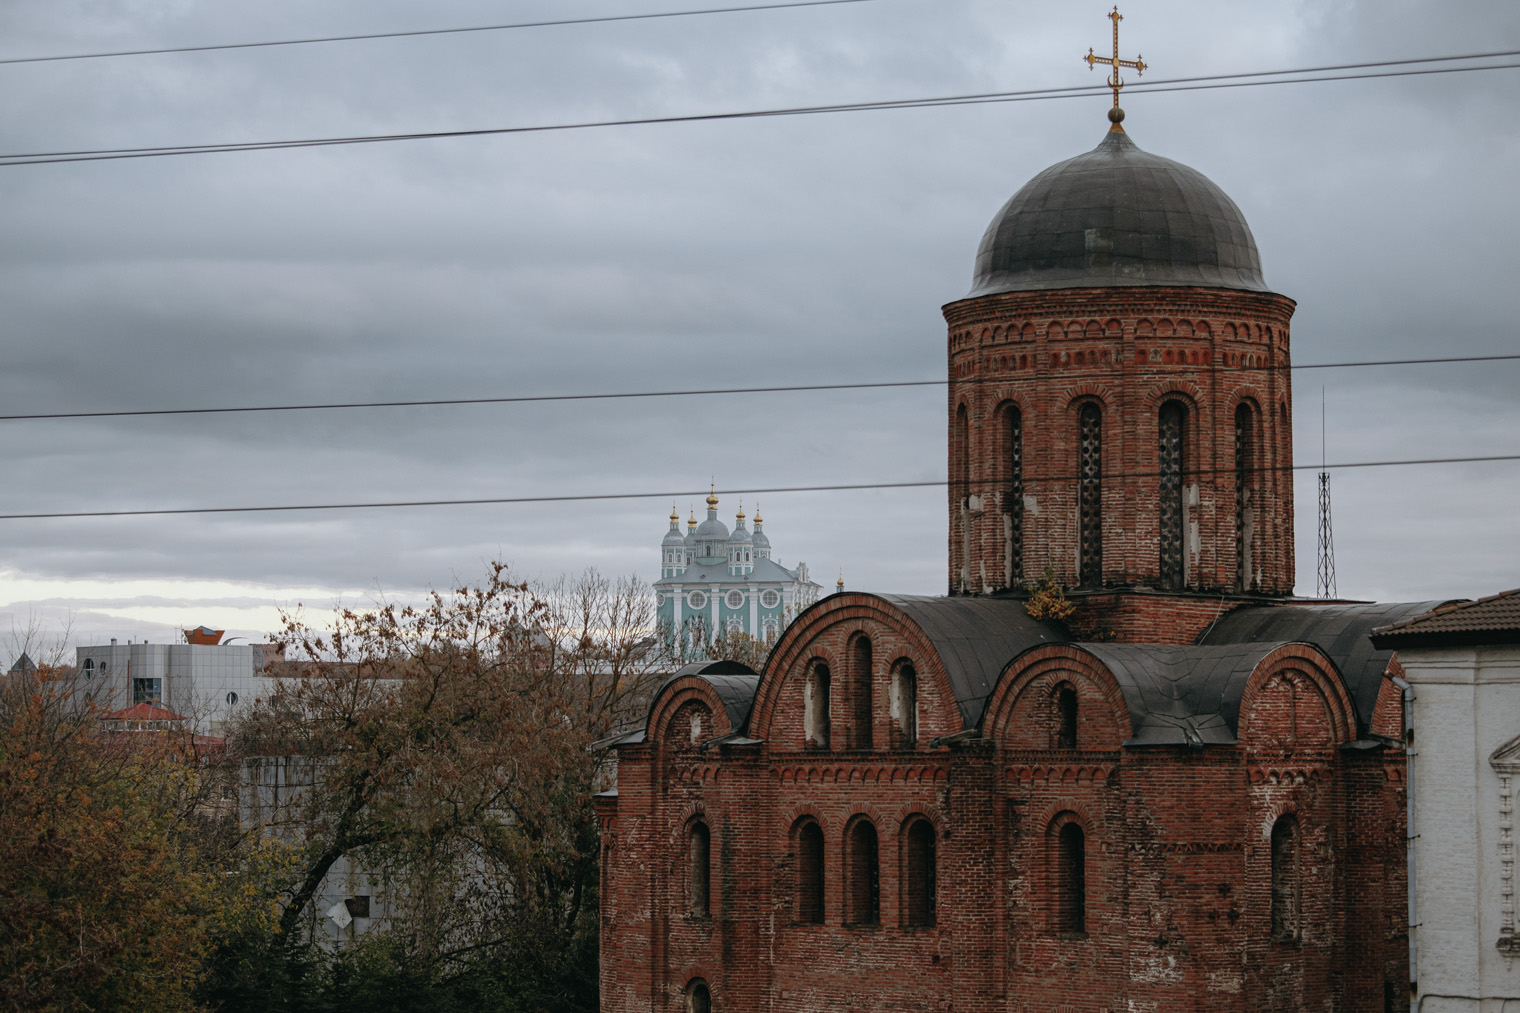 Почти любой пейзаж в Смоленске дополняют церковные купола. Здесь на переднем плане — церковь Петра и Павла, на заднем — Успенский собор